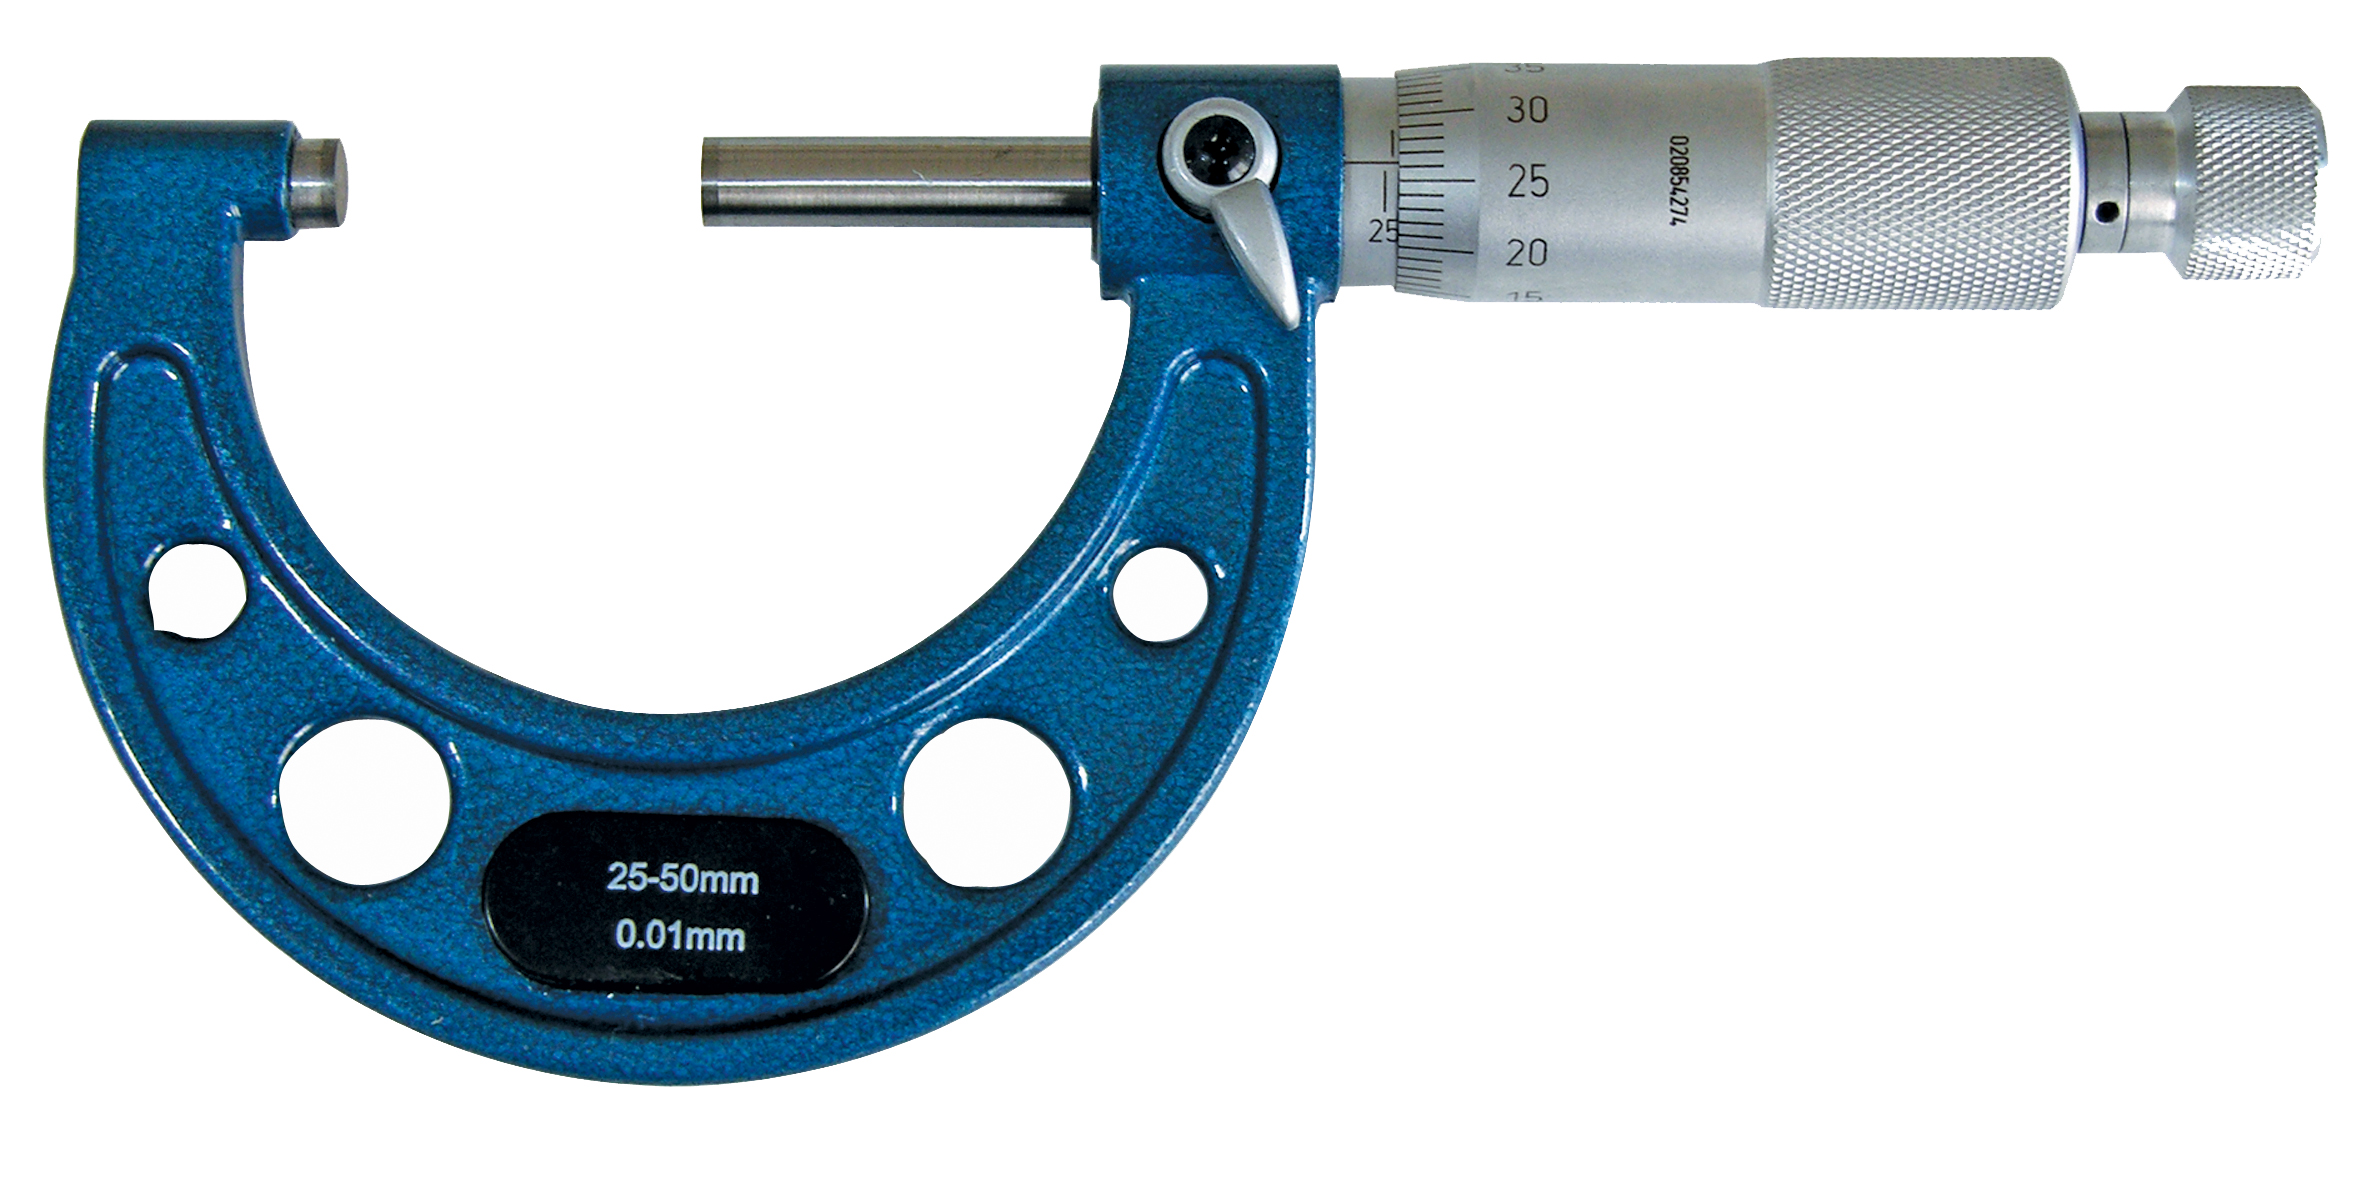 Micrometer Scale 50-75 mm Outside Micrometer Measuring tool Micrometer Gauge 